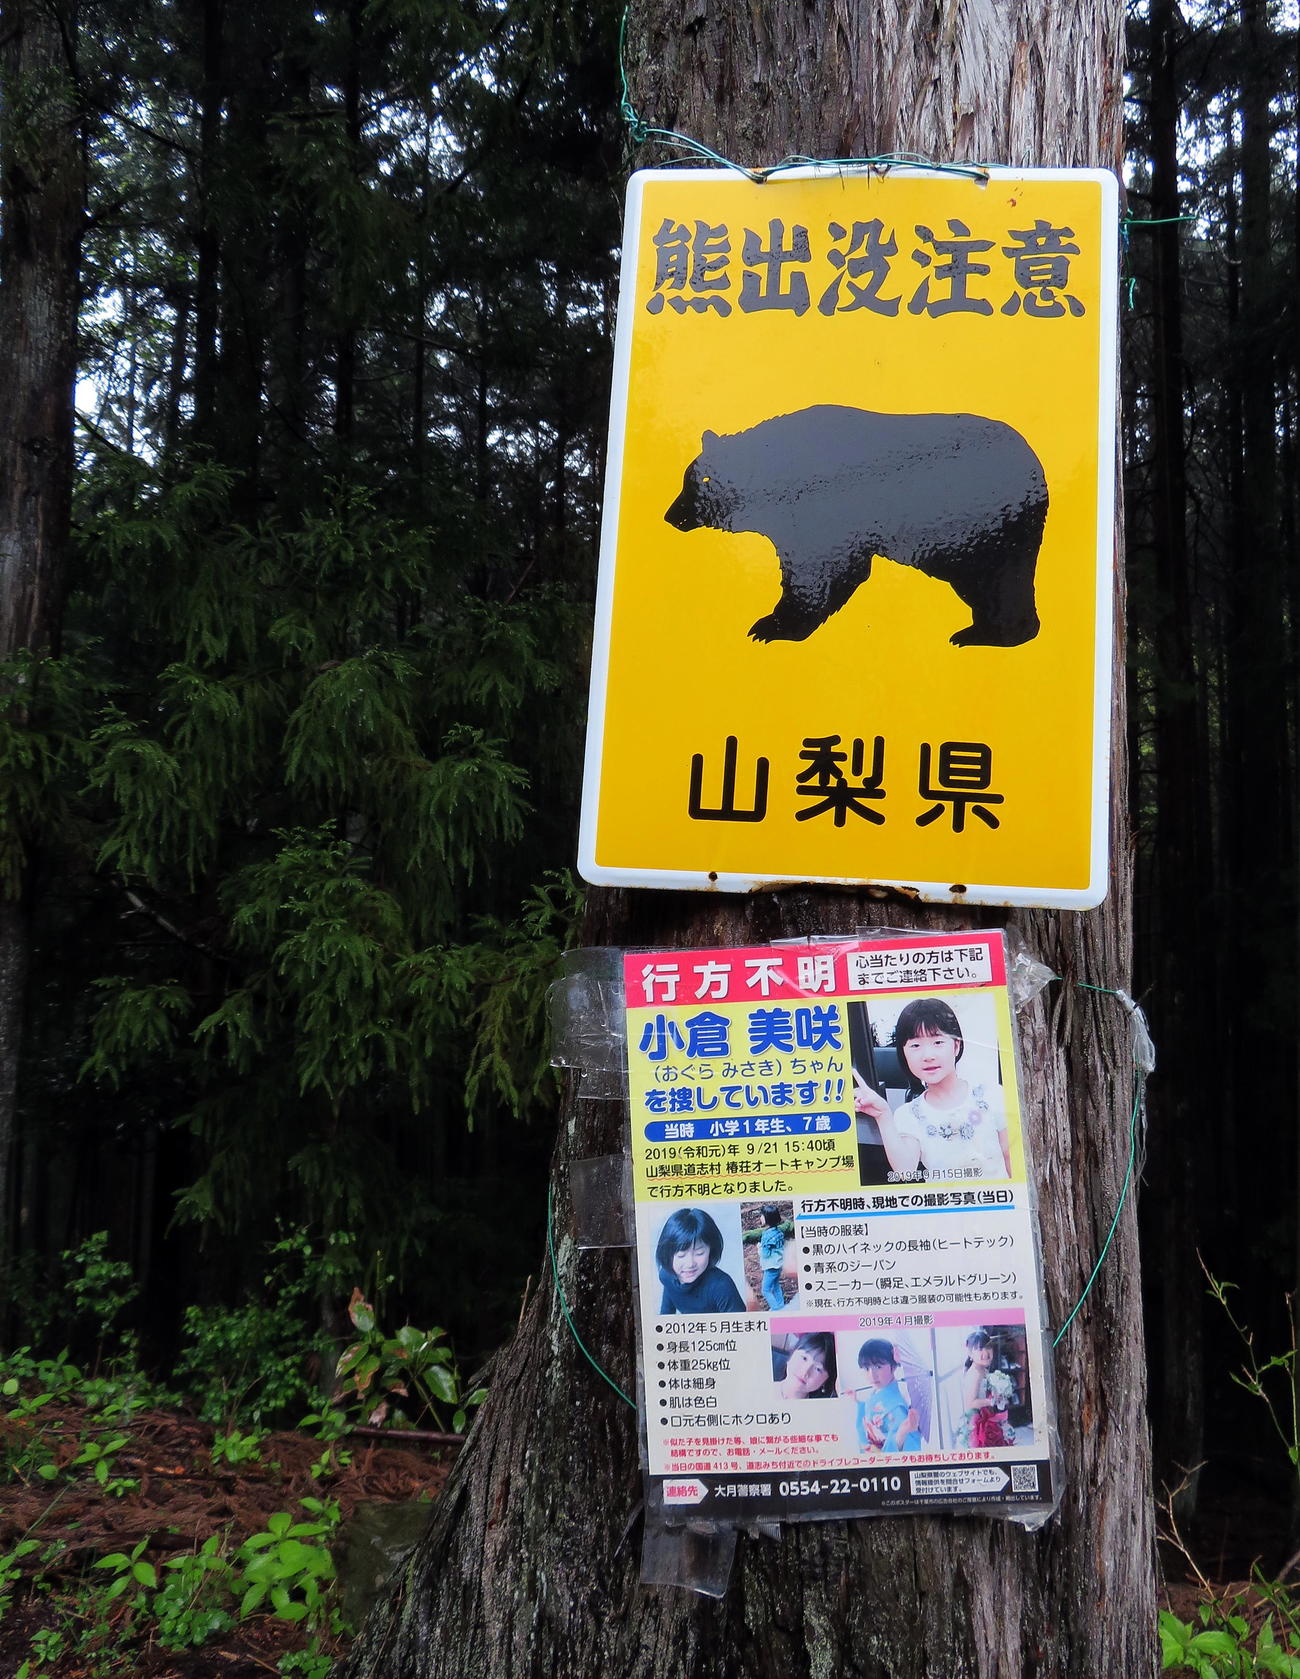 キャンプ場近くの「熊出没注意」看板の下に掲示されている小倉美咲さん捜索協力を願うポスター（撮影・鎌田直秀）